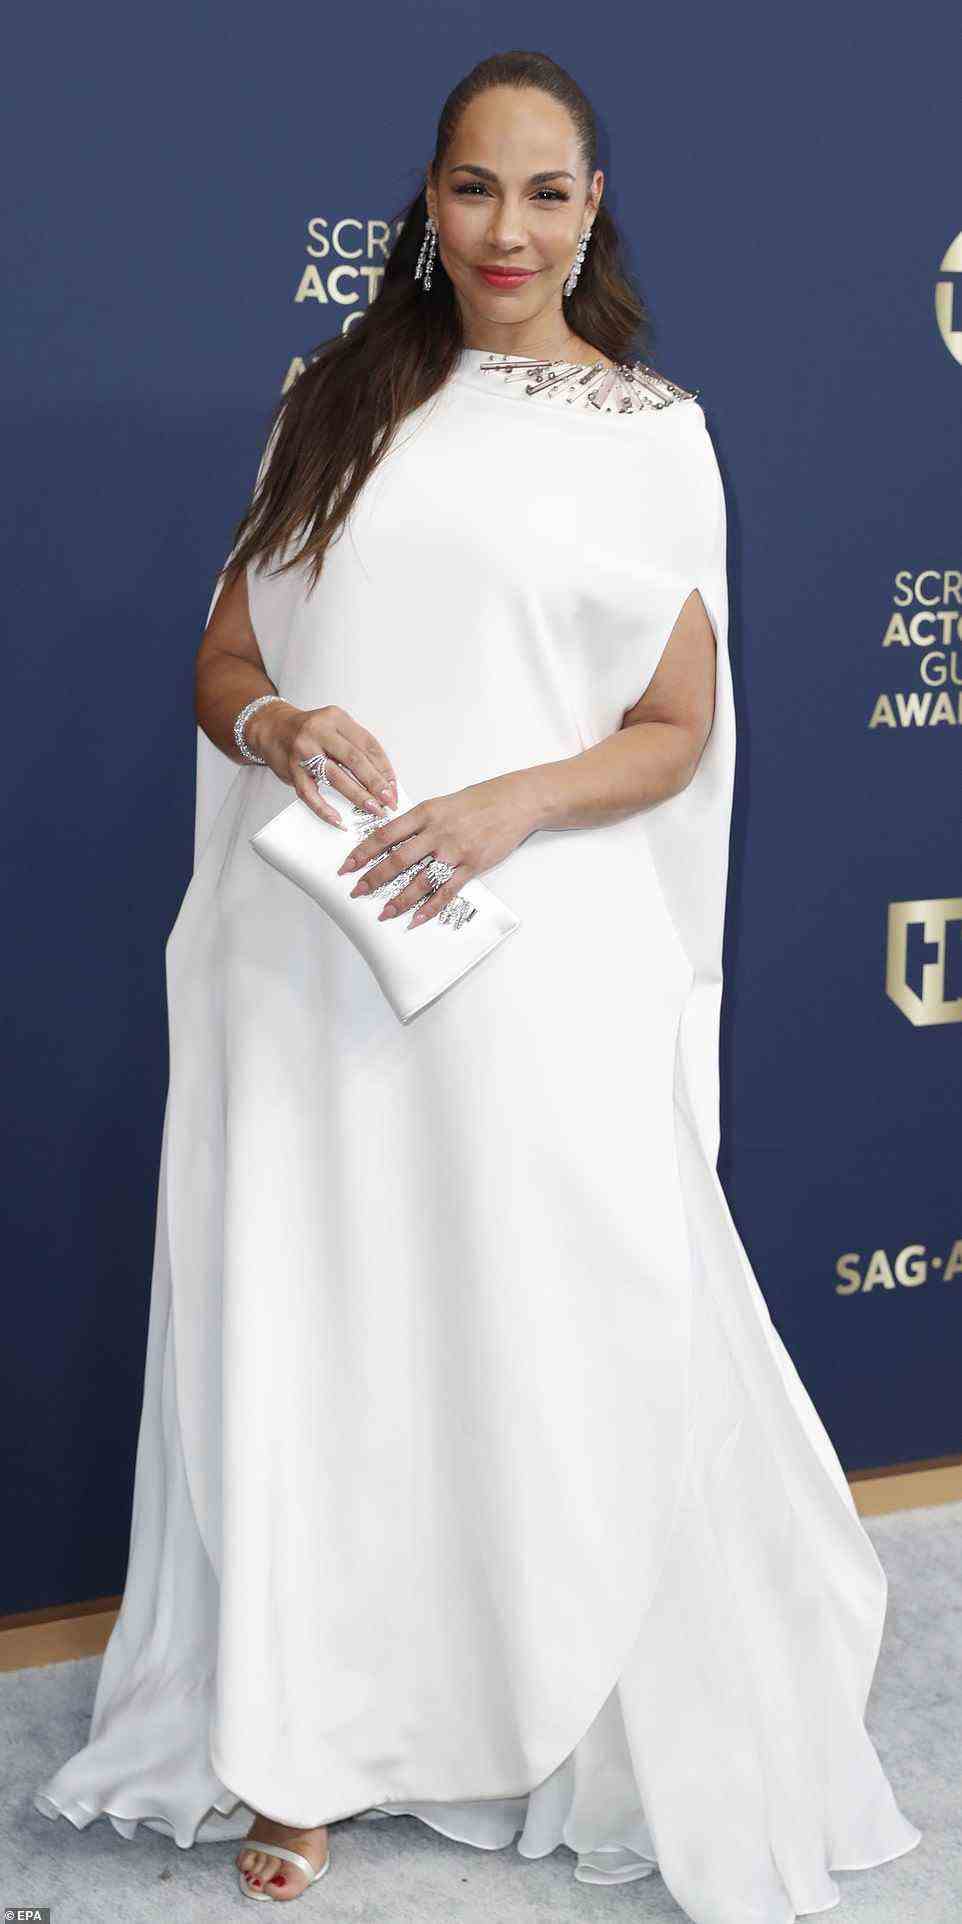 Die kanadische Schauspielerin Amanda Brugel wurde in einem weißen, übergroßen Kleid gesehen, das ziemlich ungünstig auf ihren Körper passte